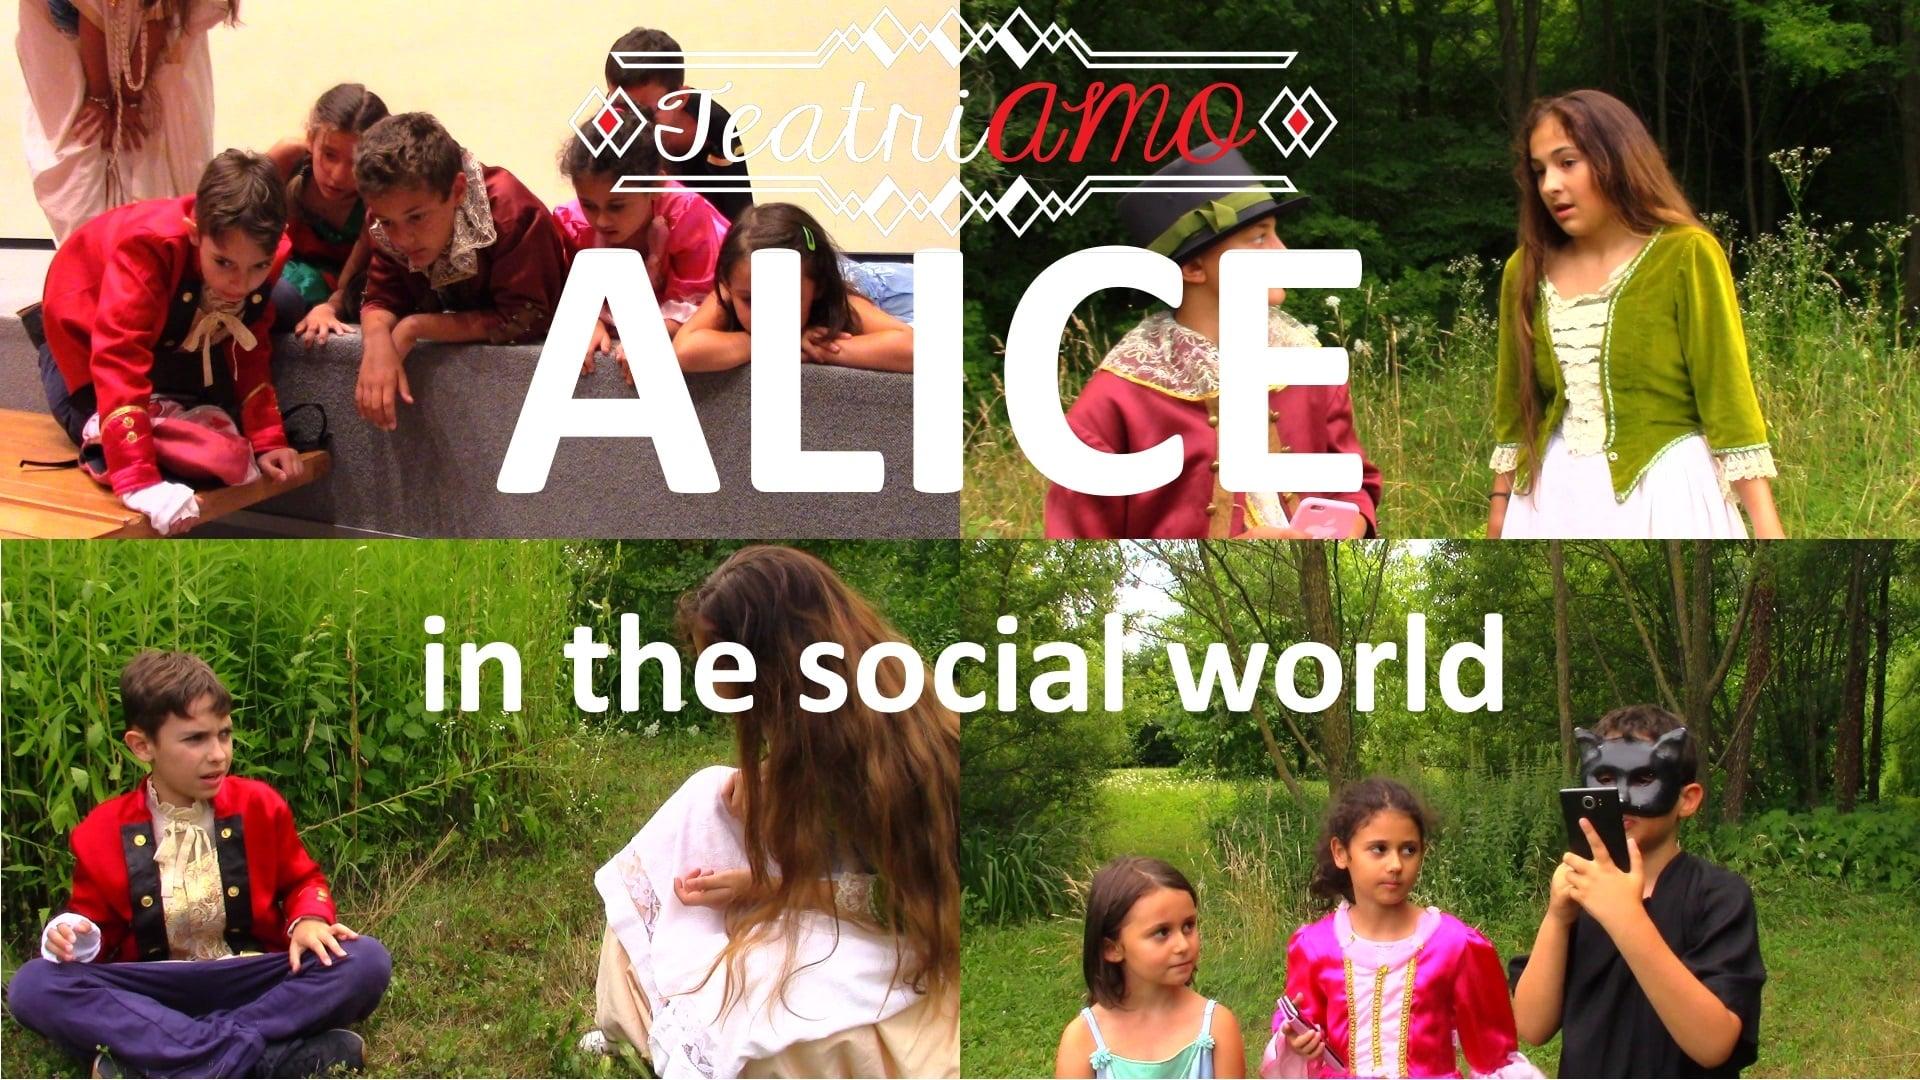 Alice in the social world backdrop